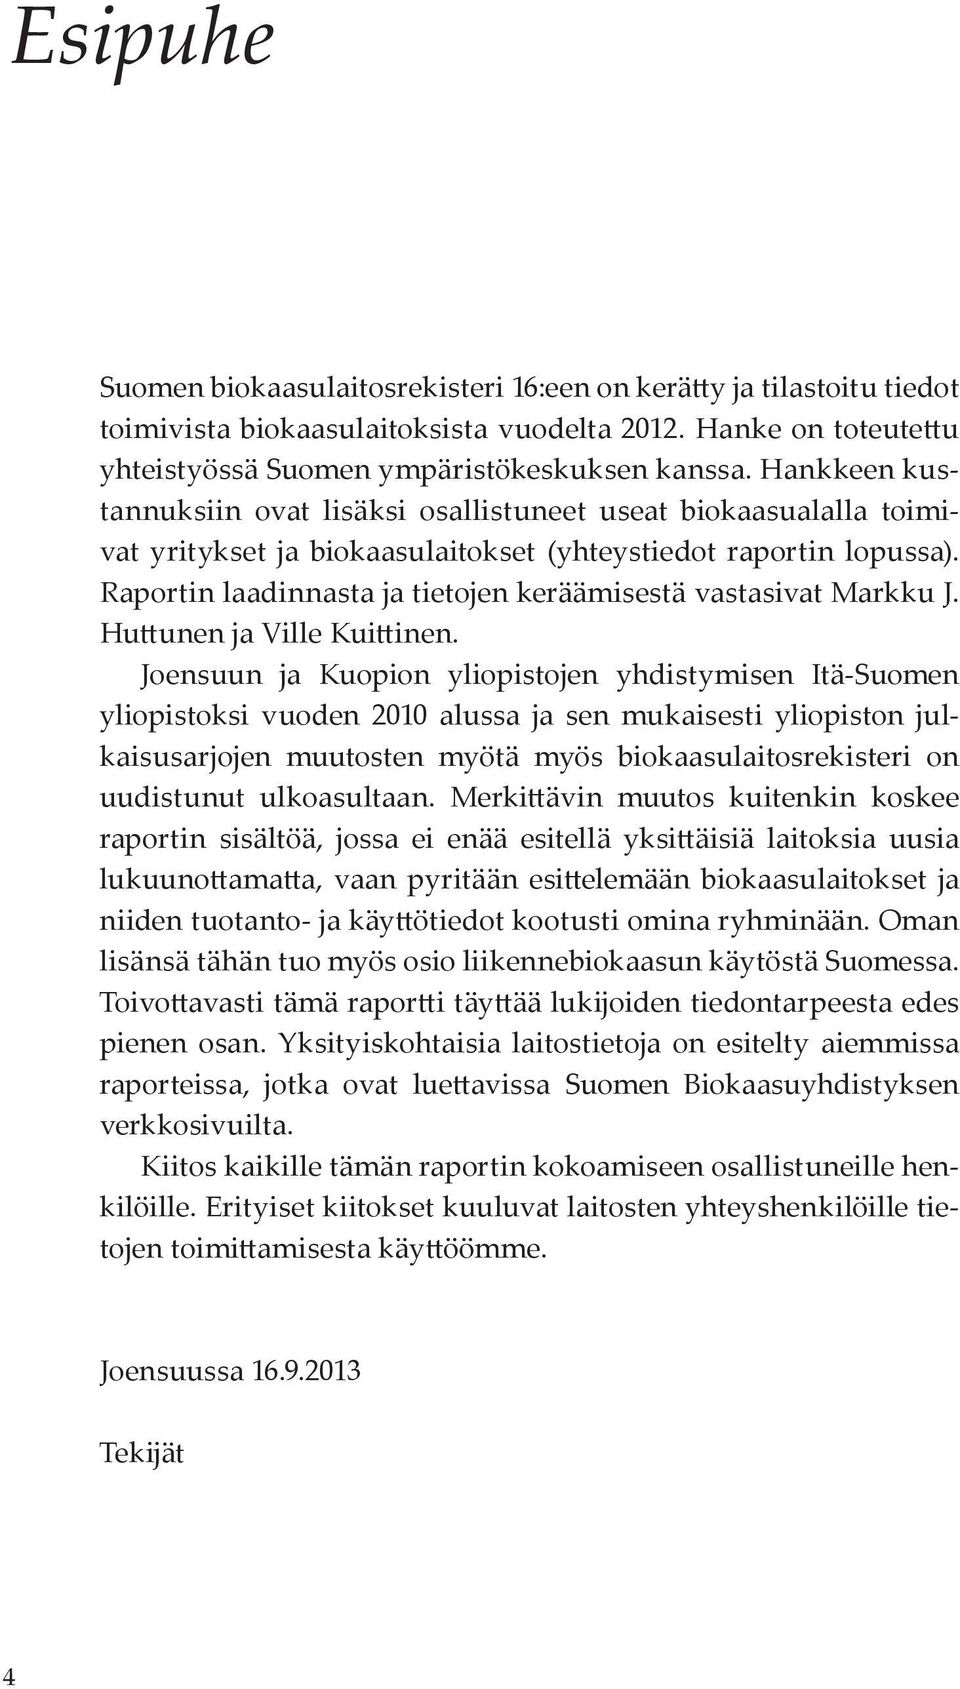 Raportin laadinnasta ja tietojen keräämisestä vastasivat Markku J. Huttunen ja Ville Kuittinen.